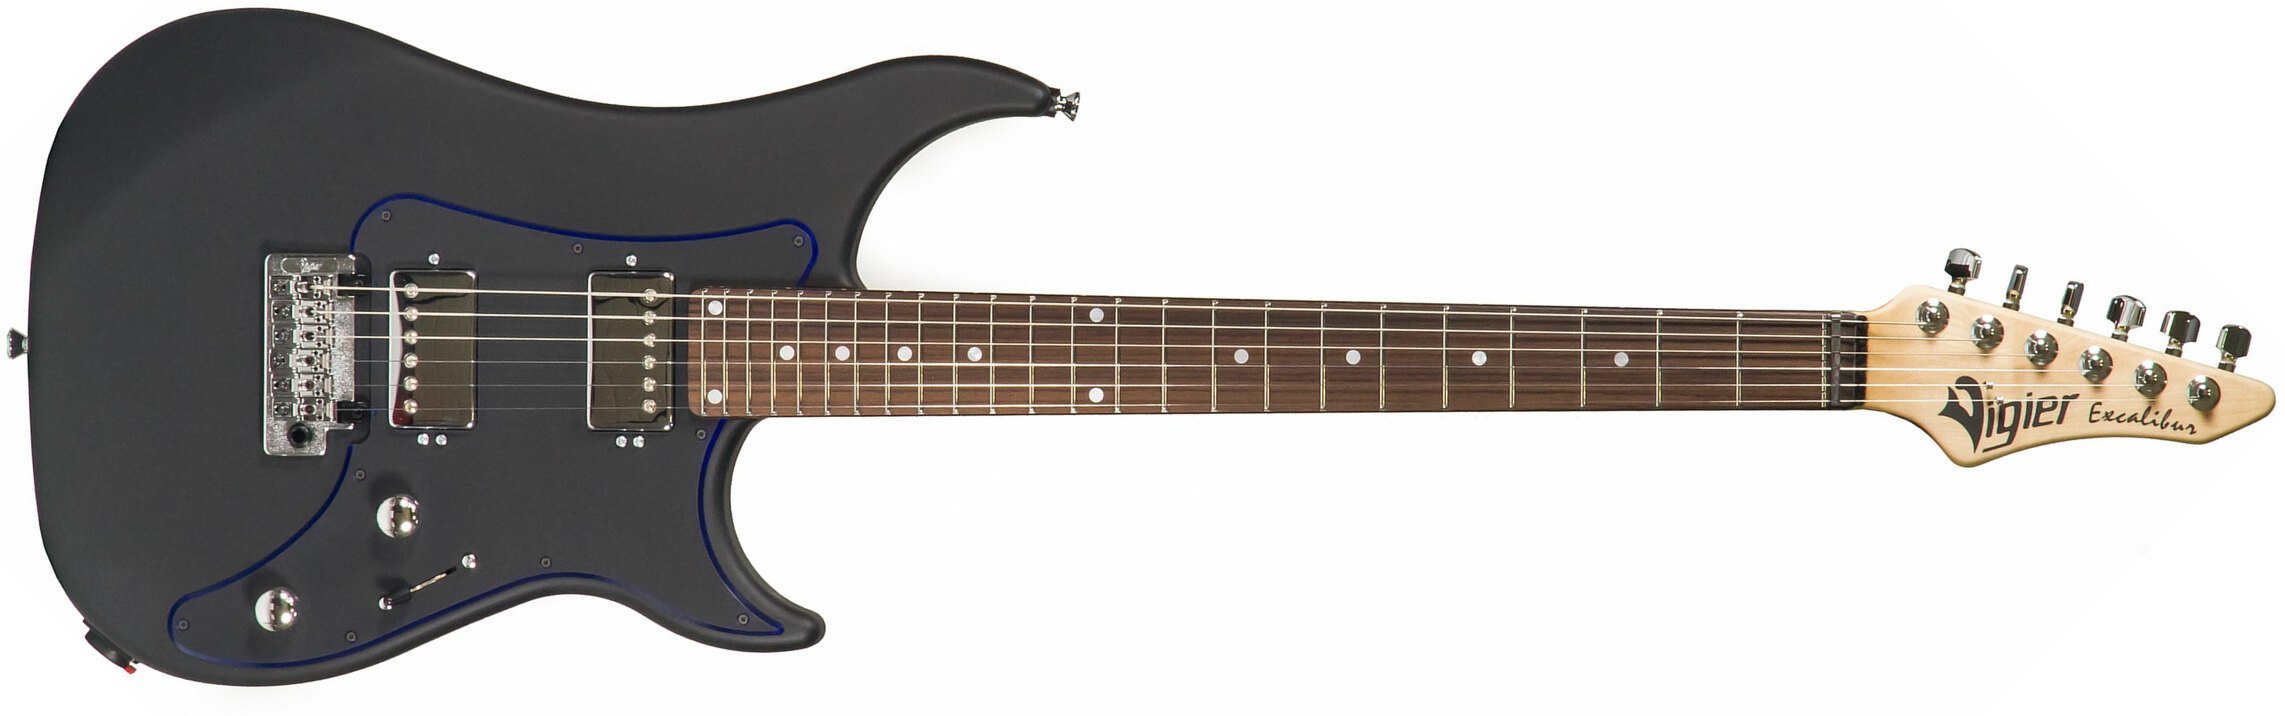 Vigier Excalibur Indus Hh Trem Rw - Textured Black - Double Cut E-Gitarre - Main picture